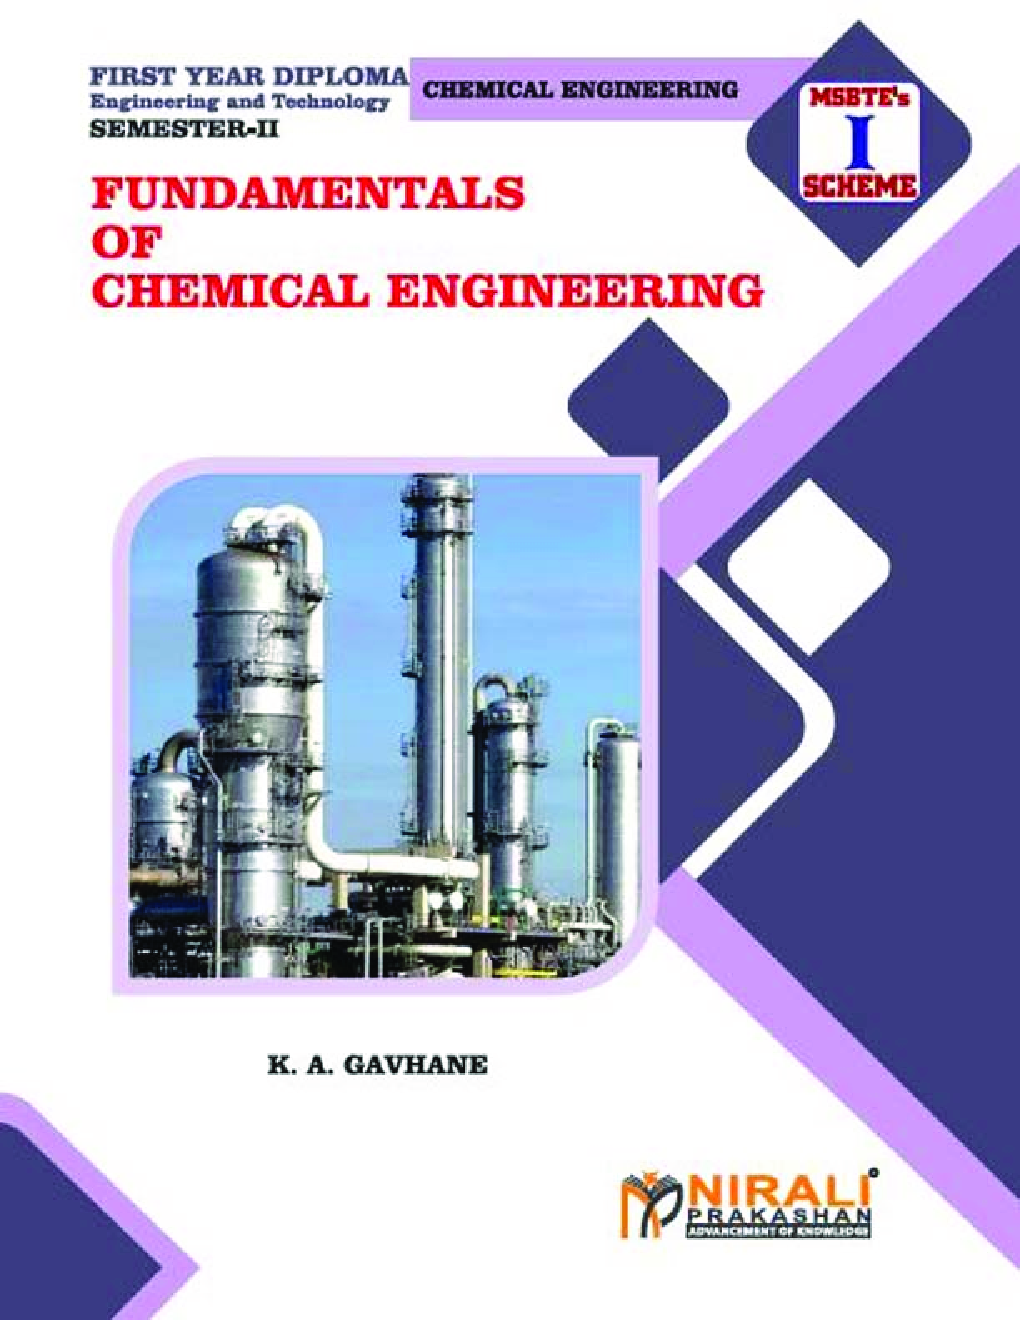 chemical engineering basics pdf